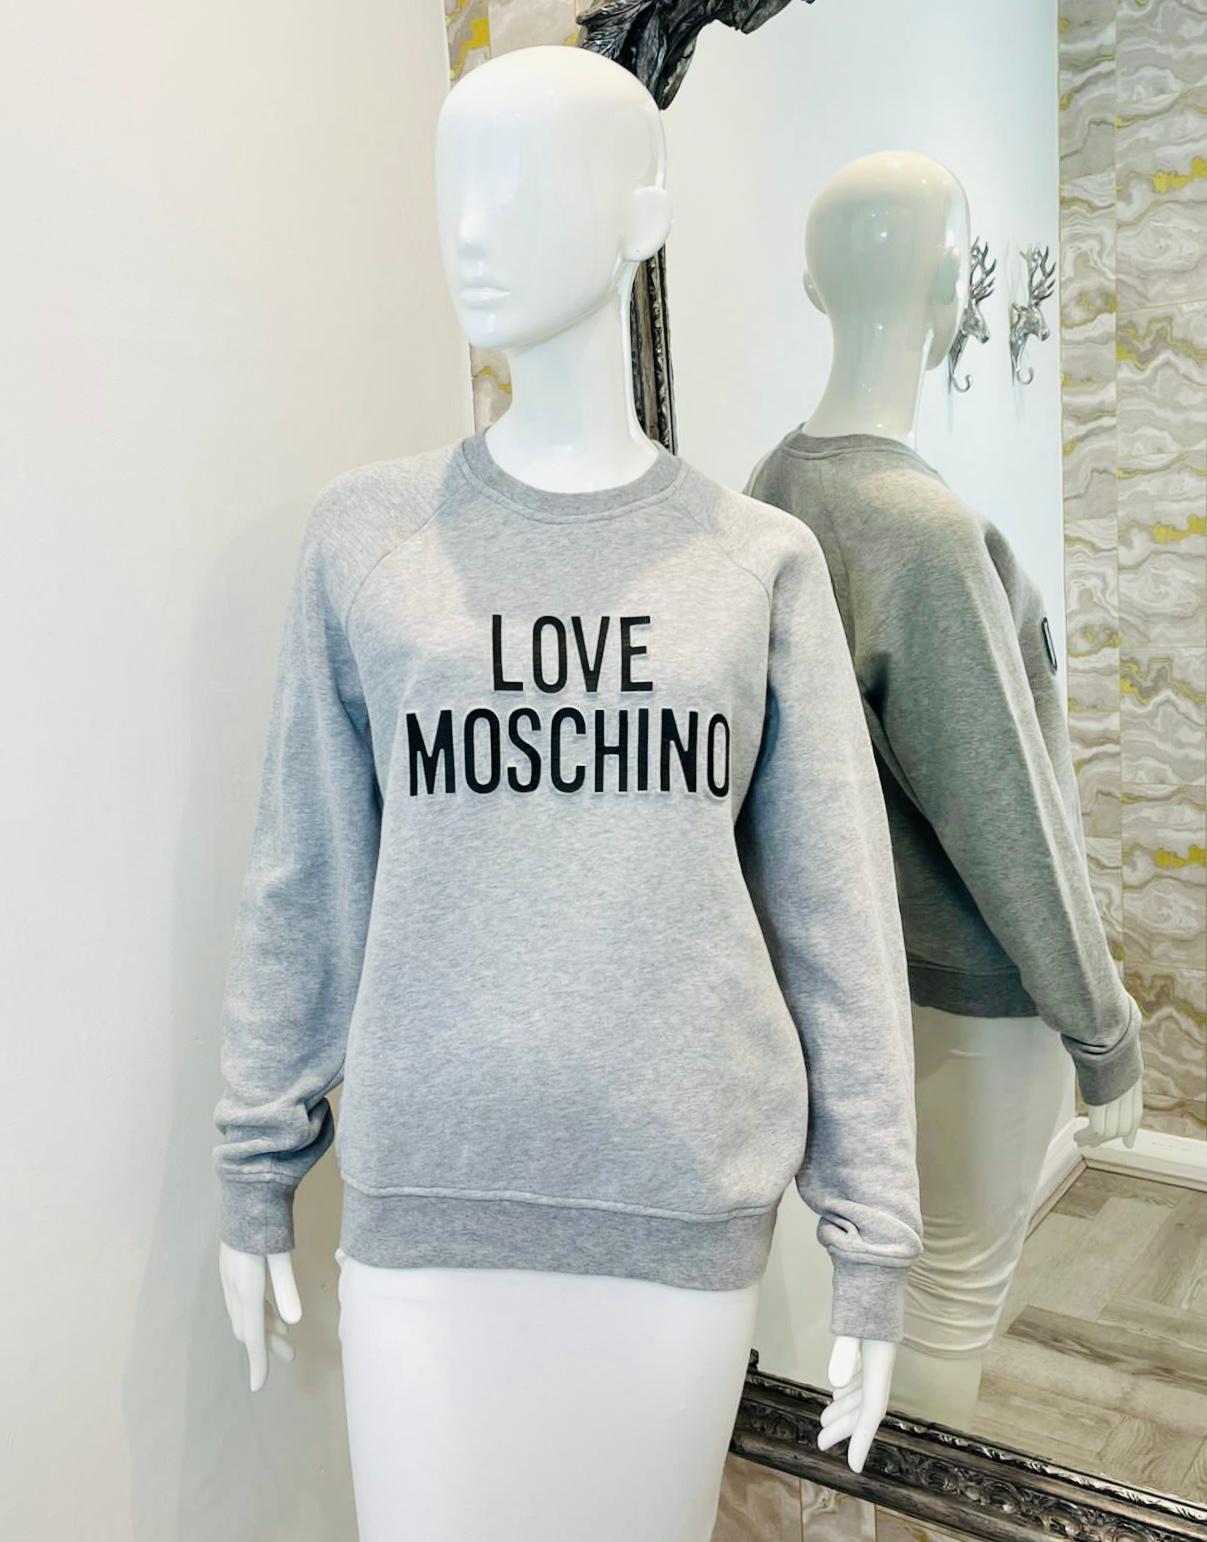 Love Moschino 'Logo' Pulloverhemd aus Baumwolle

Hellgraues Top mit schwarzer 